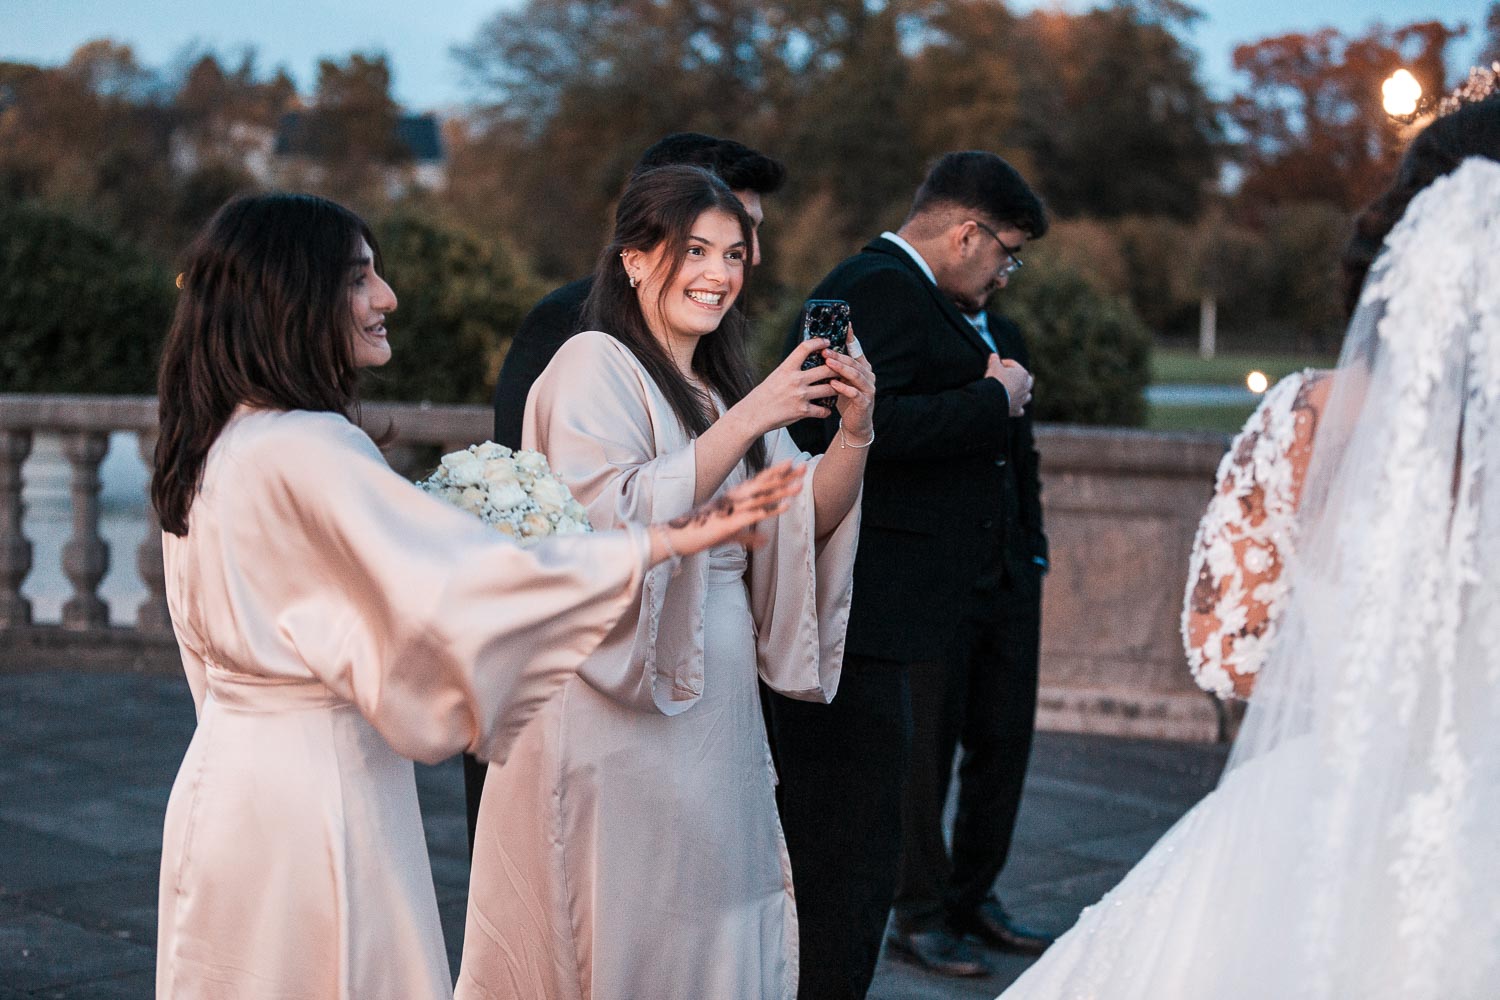 BridesMaids fotografiert Braut mit ihrem Smartphone während sie zum Klang der Steeldrum tanzt